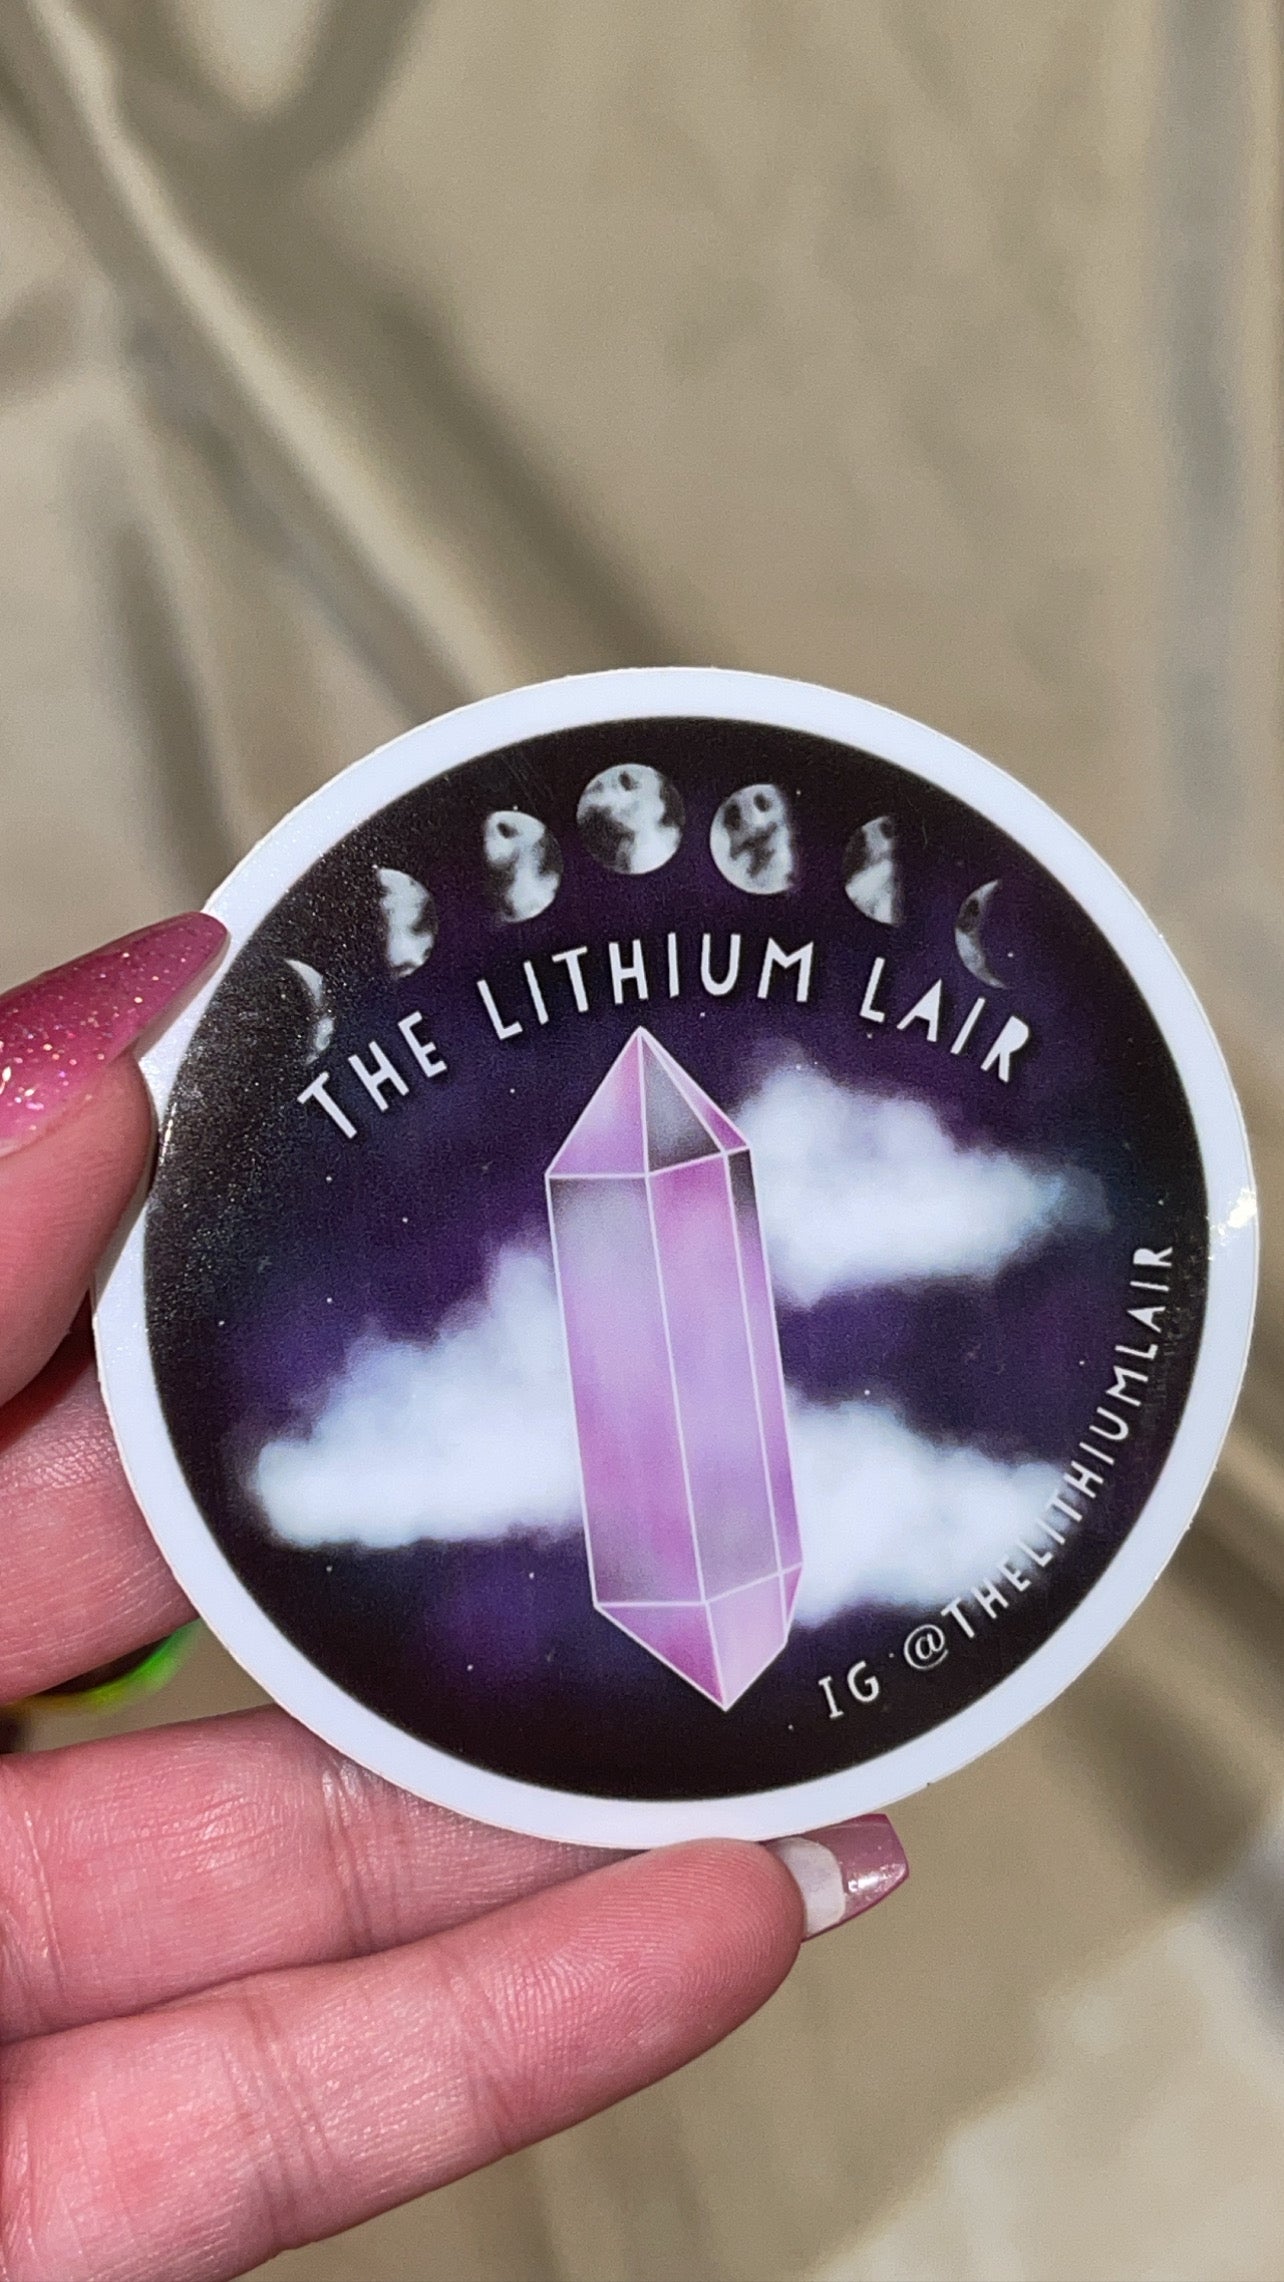 Lithium Lair Swag Pack